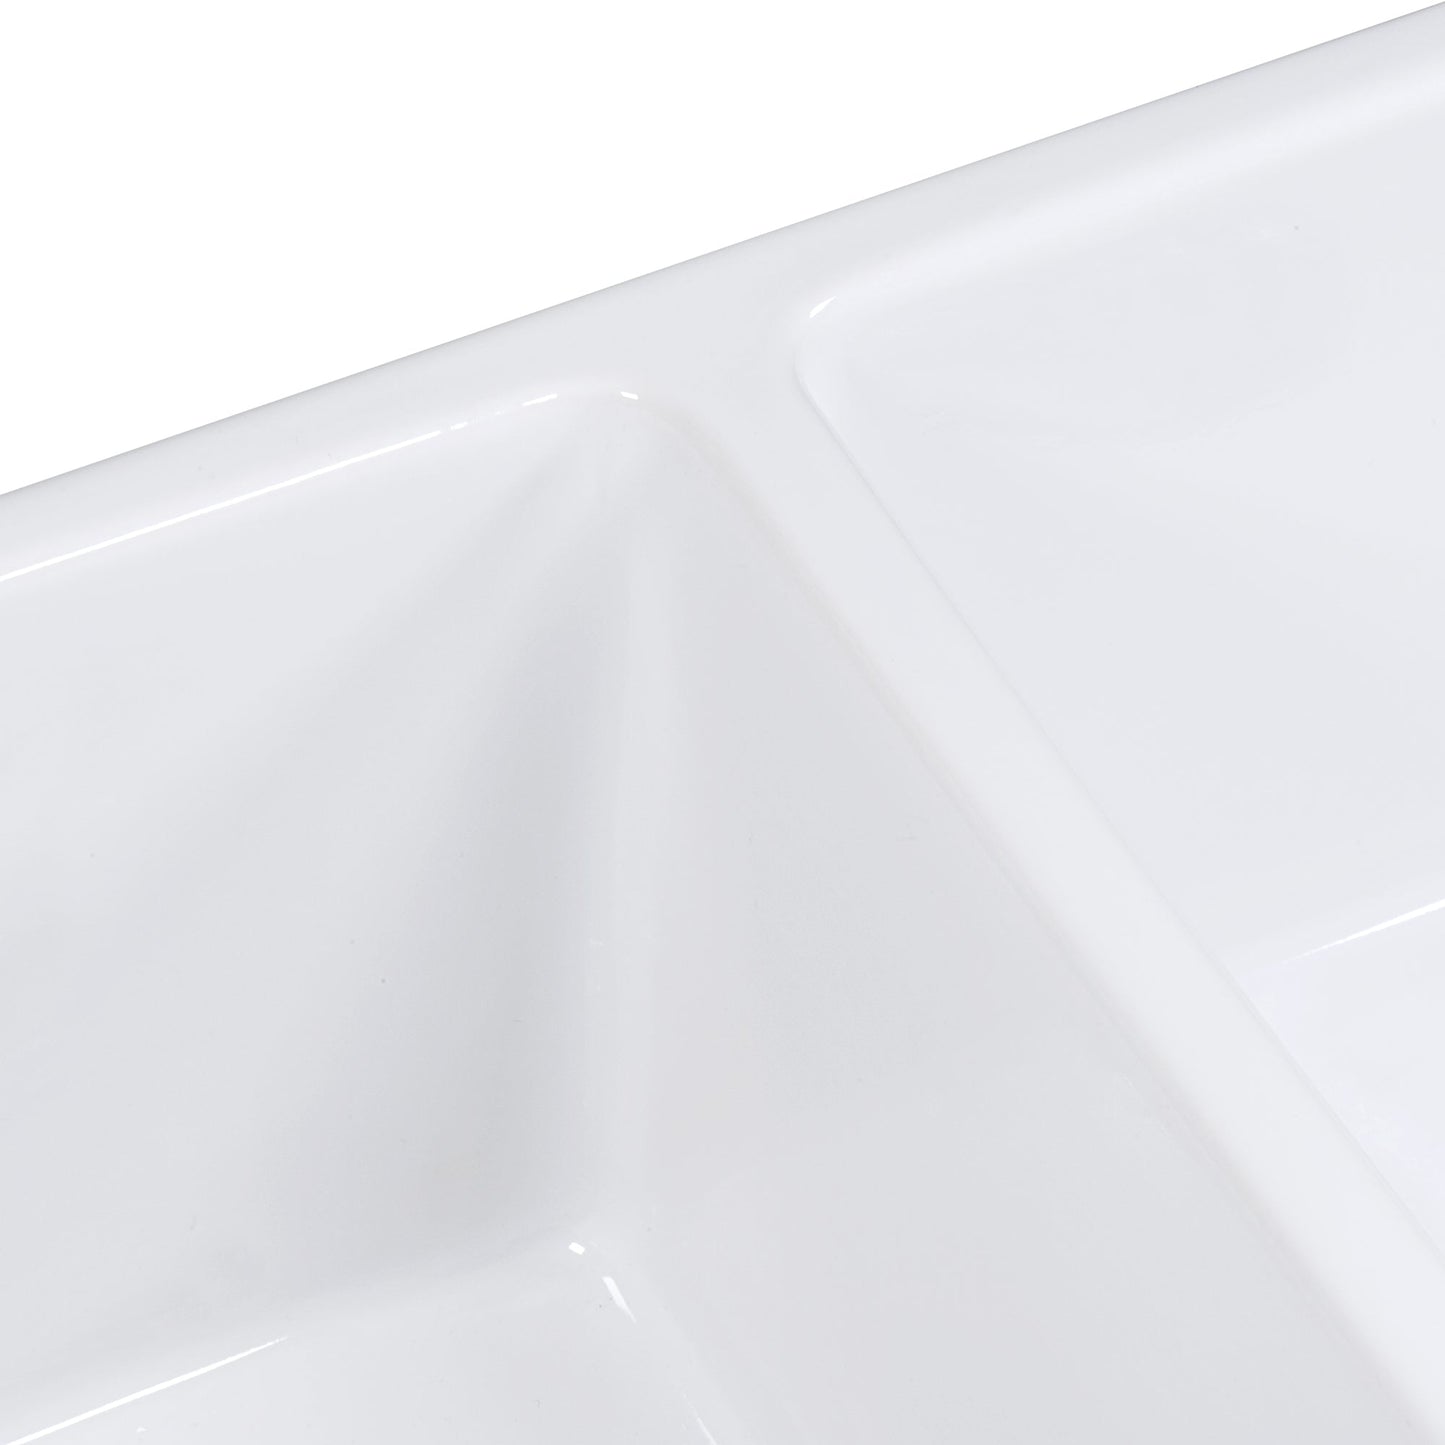 Ruvati Fiamma 33" x 18" White Double Bowl Fireclay Reversible Farmhouse Apron-Front Kitchen Sink